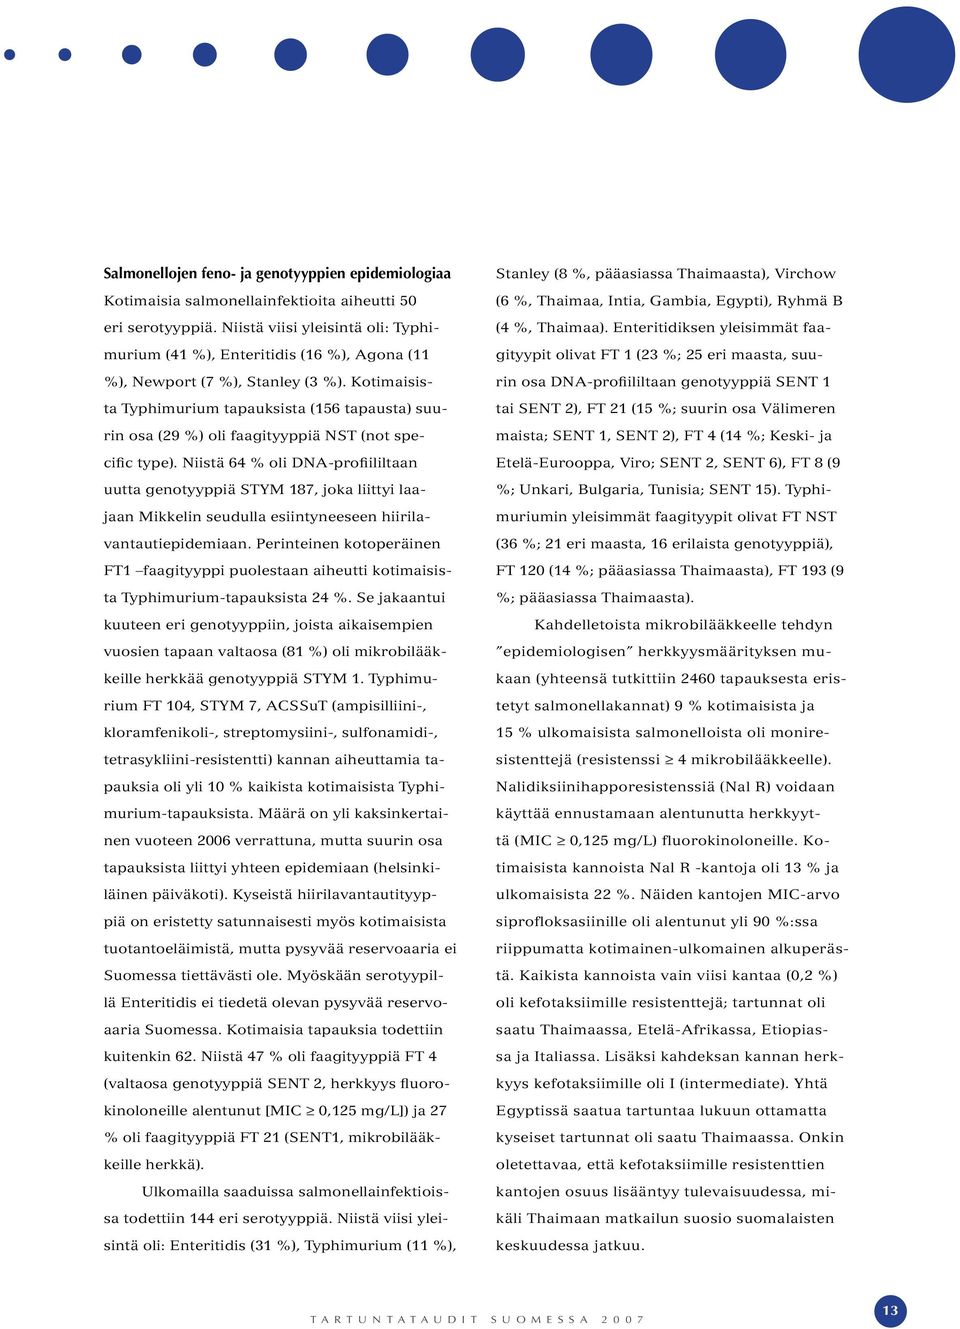 Kotimaisista Typhimurium tapauksista (156 tapausta) suurin osa (29 %) oli faagityyppiä NST (not specific type).